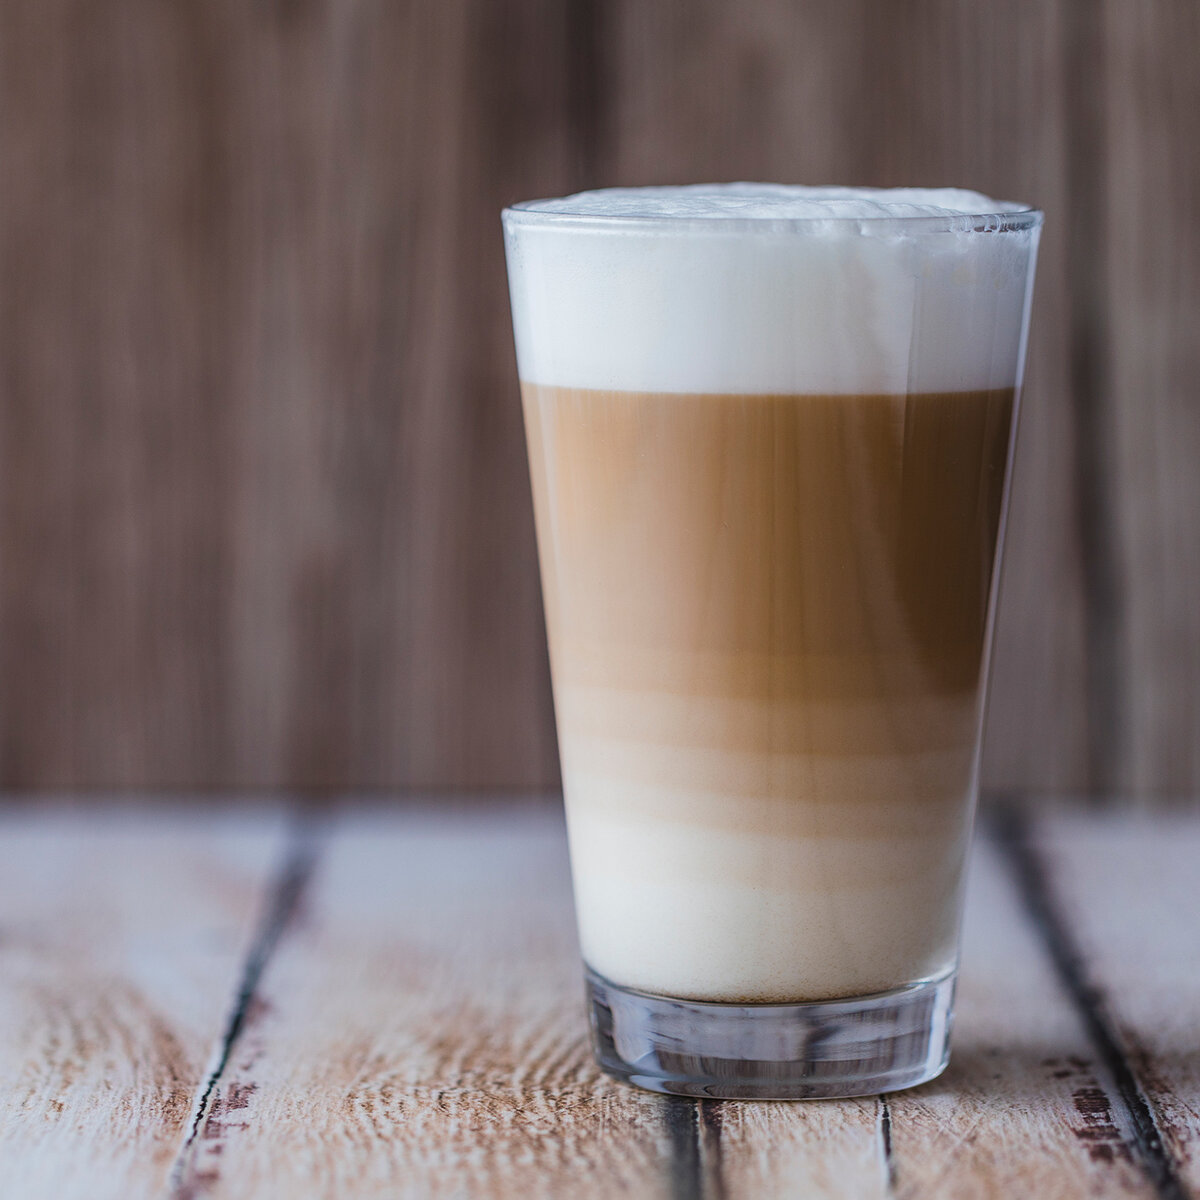    Вредно ли пить кофе с молоком?